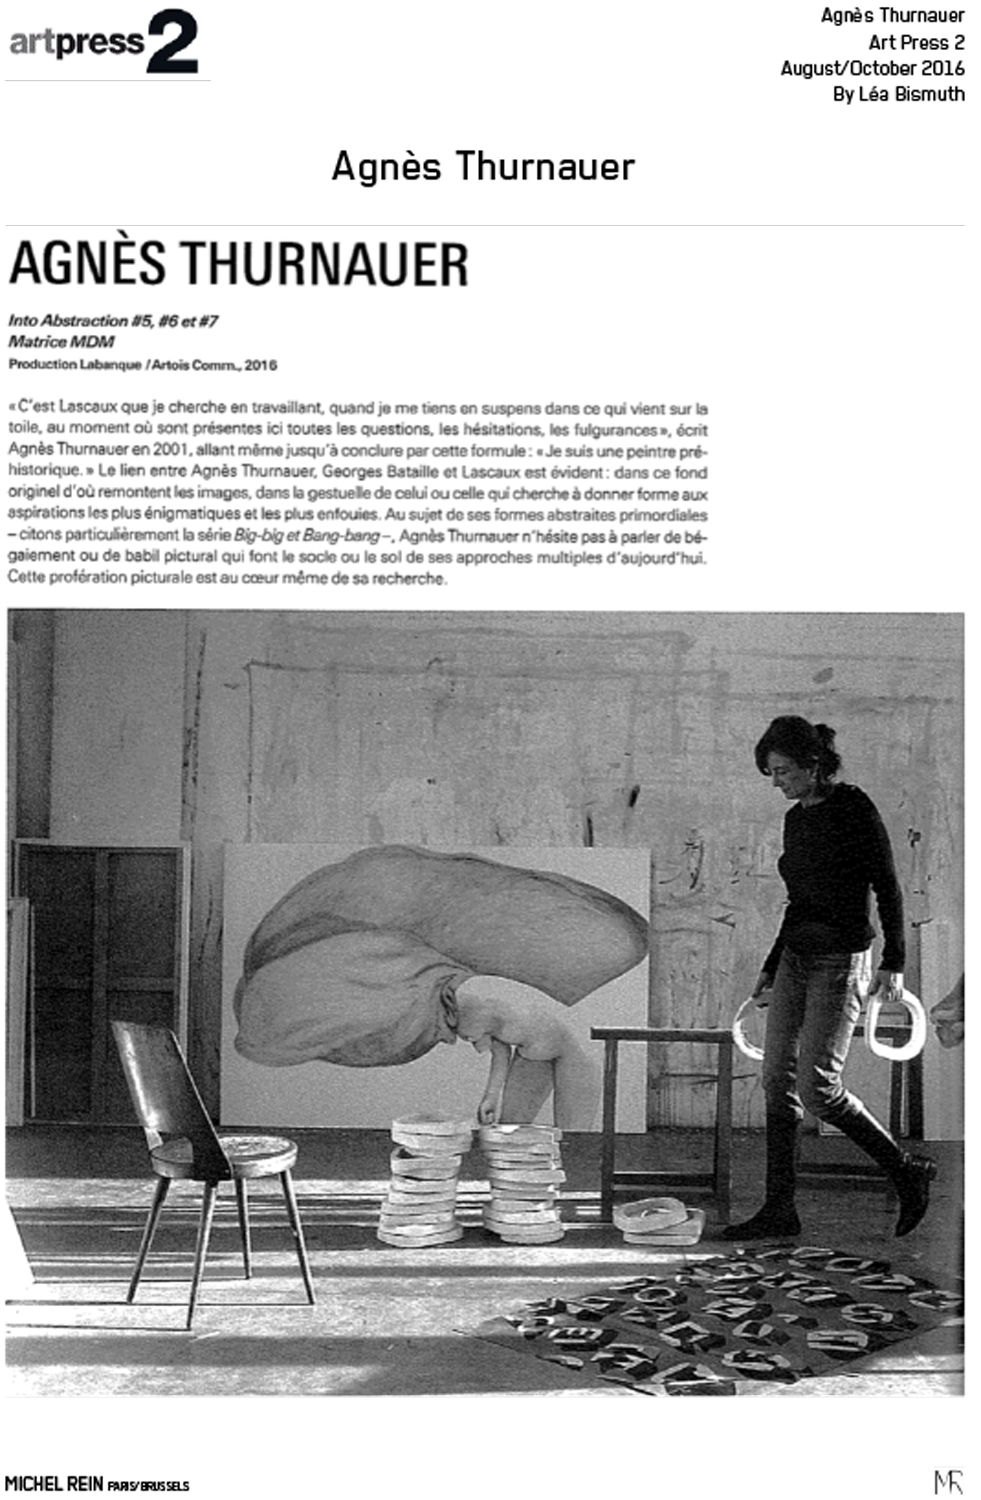 Agns Thurnauer - Art Press 2